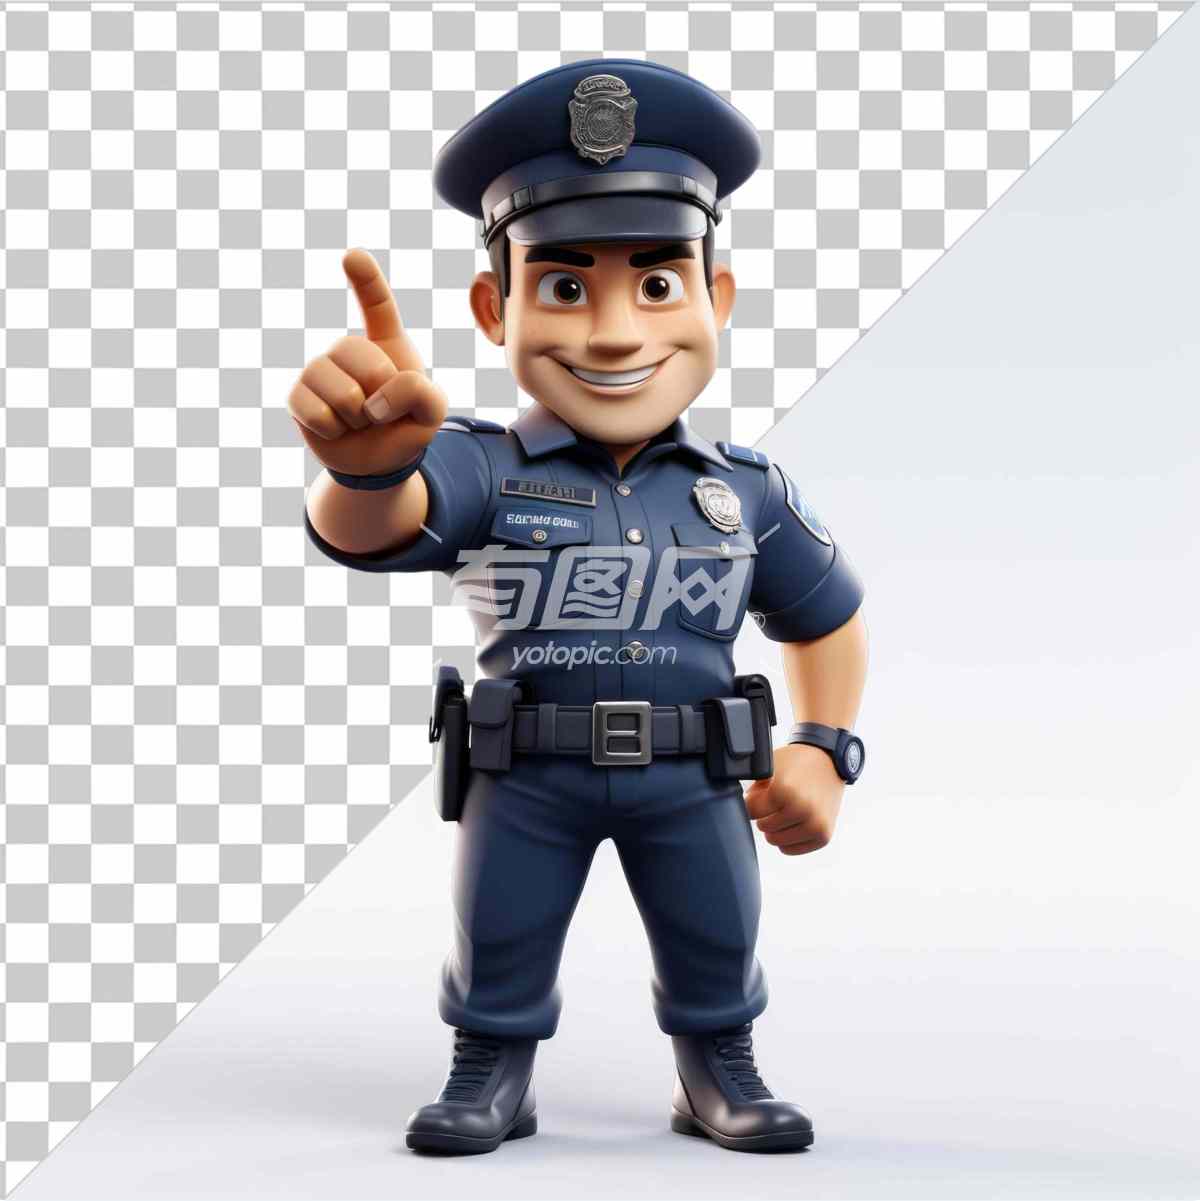 卡通风格的警察角色